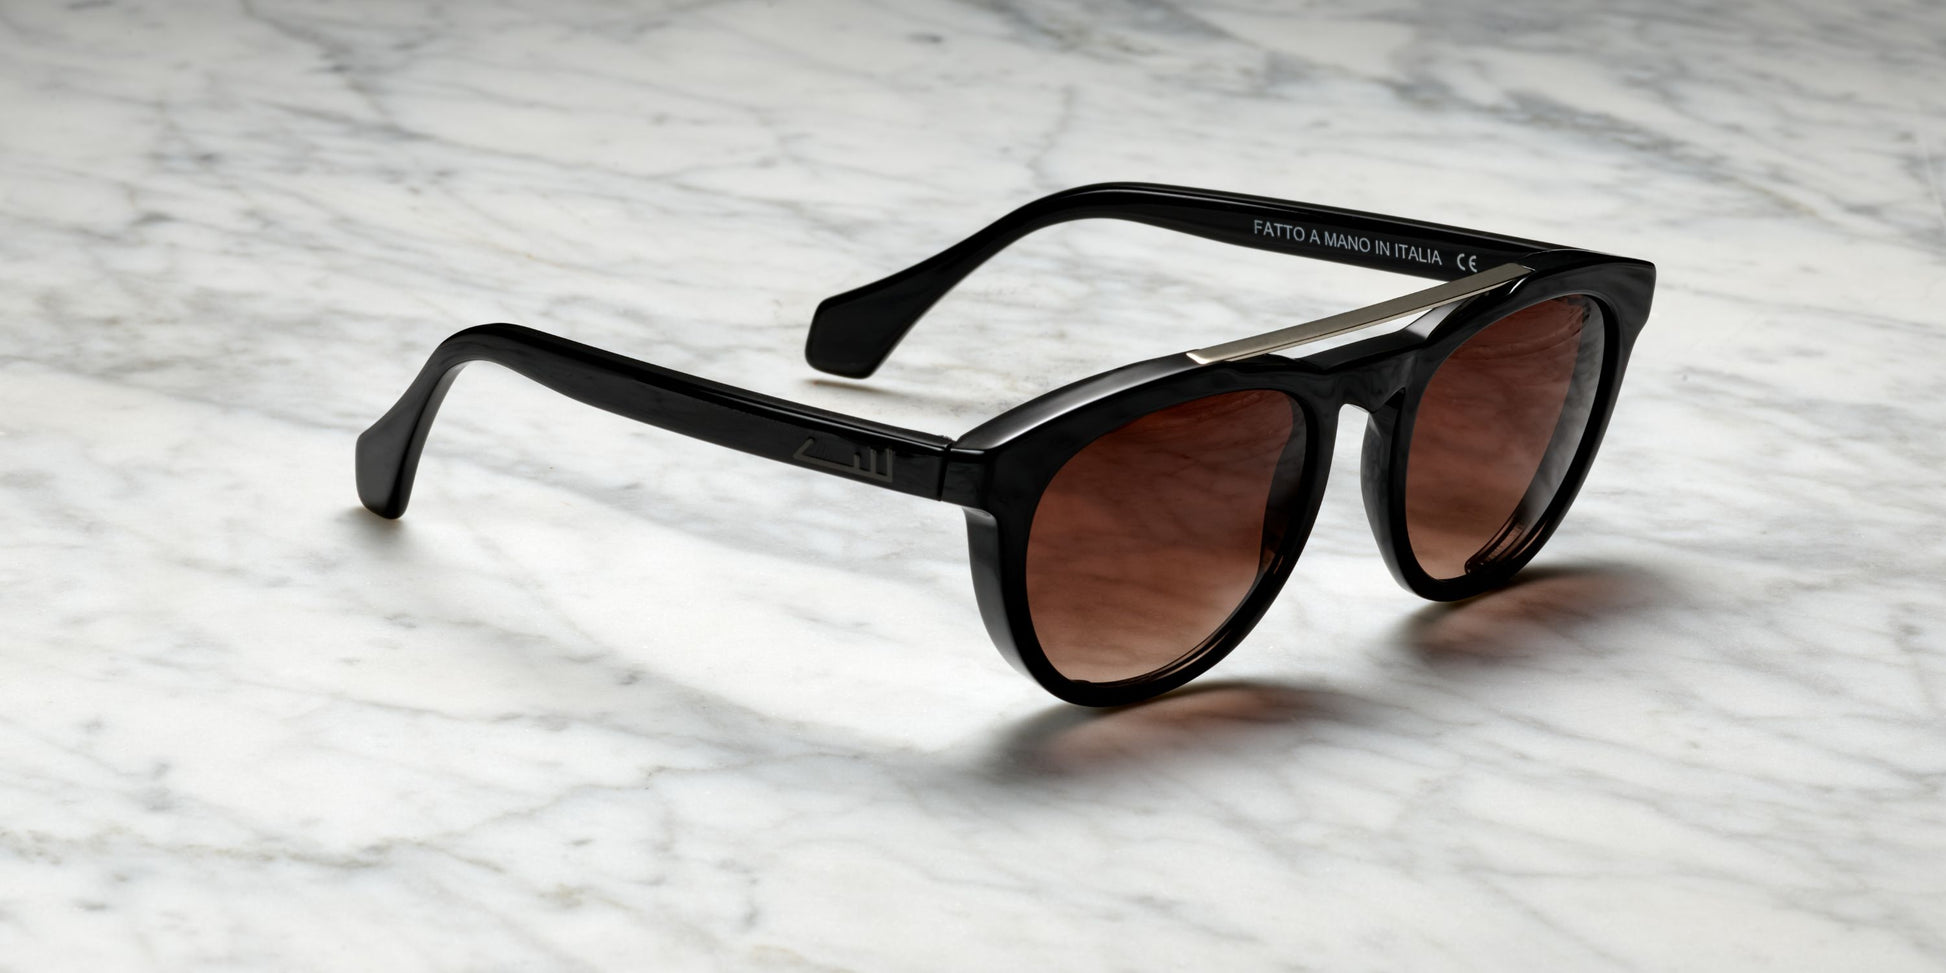 occhiali da sole neri con dettagli tono su tono